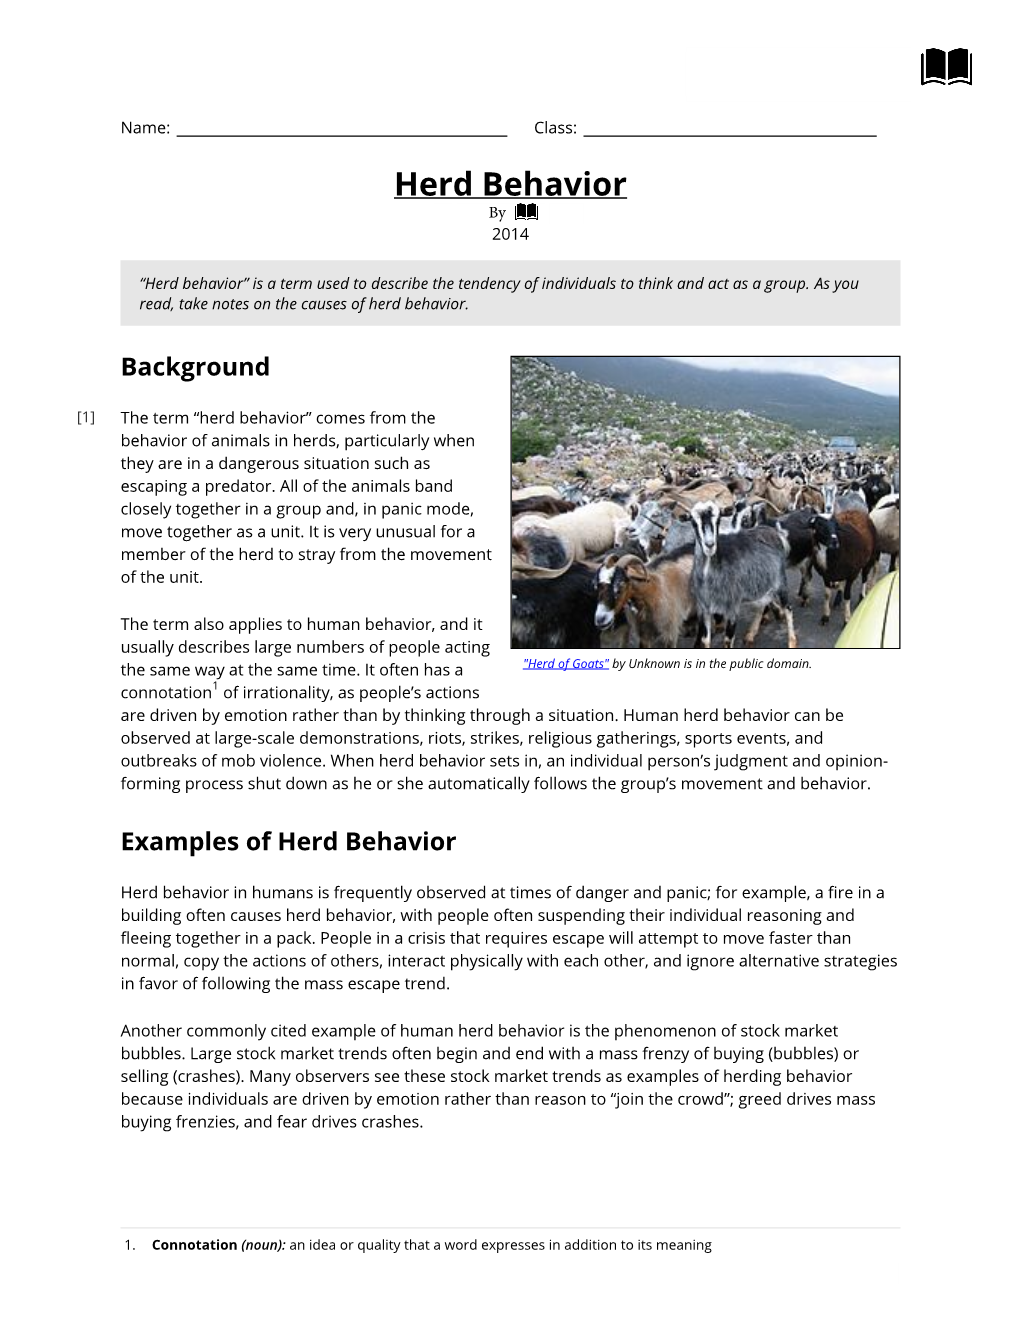 Herd Behavior by 2014